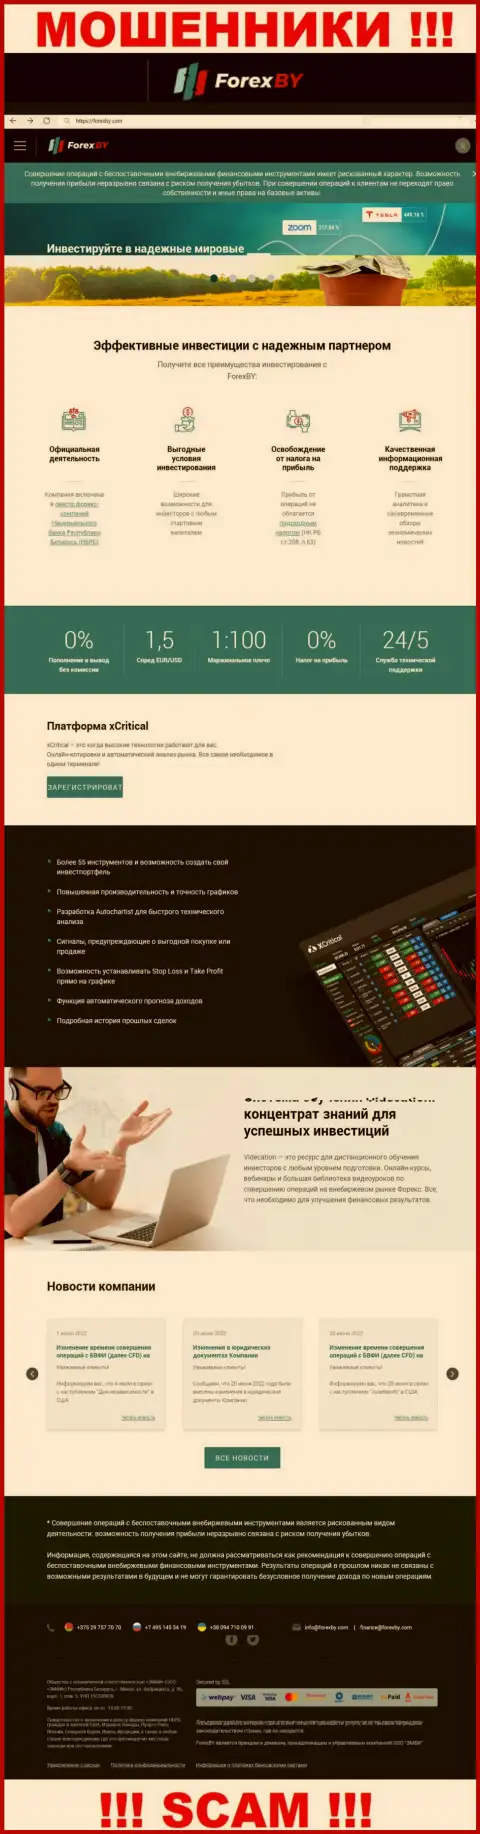 Официальный web-сайт мошенников ФорексБИ